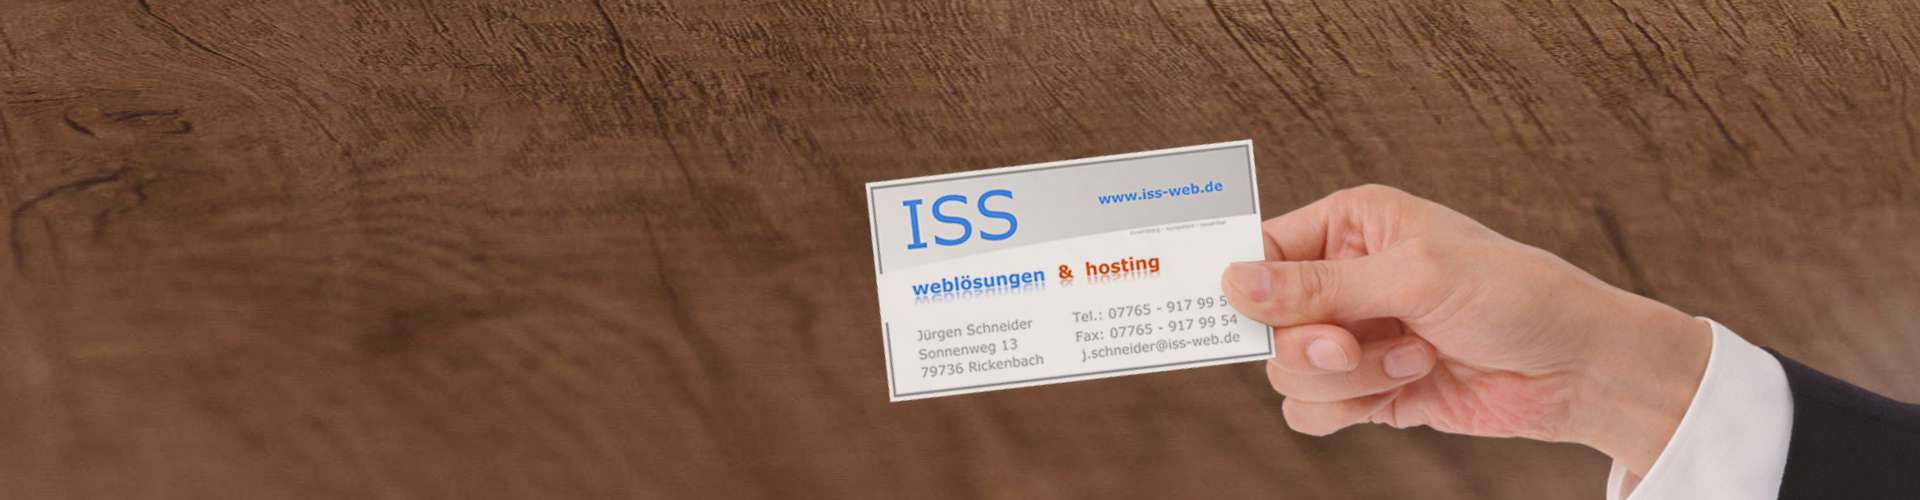 Referenzen Sport & Vereine | ISS - Internet Services | websites, hosting & digital marketing